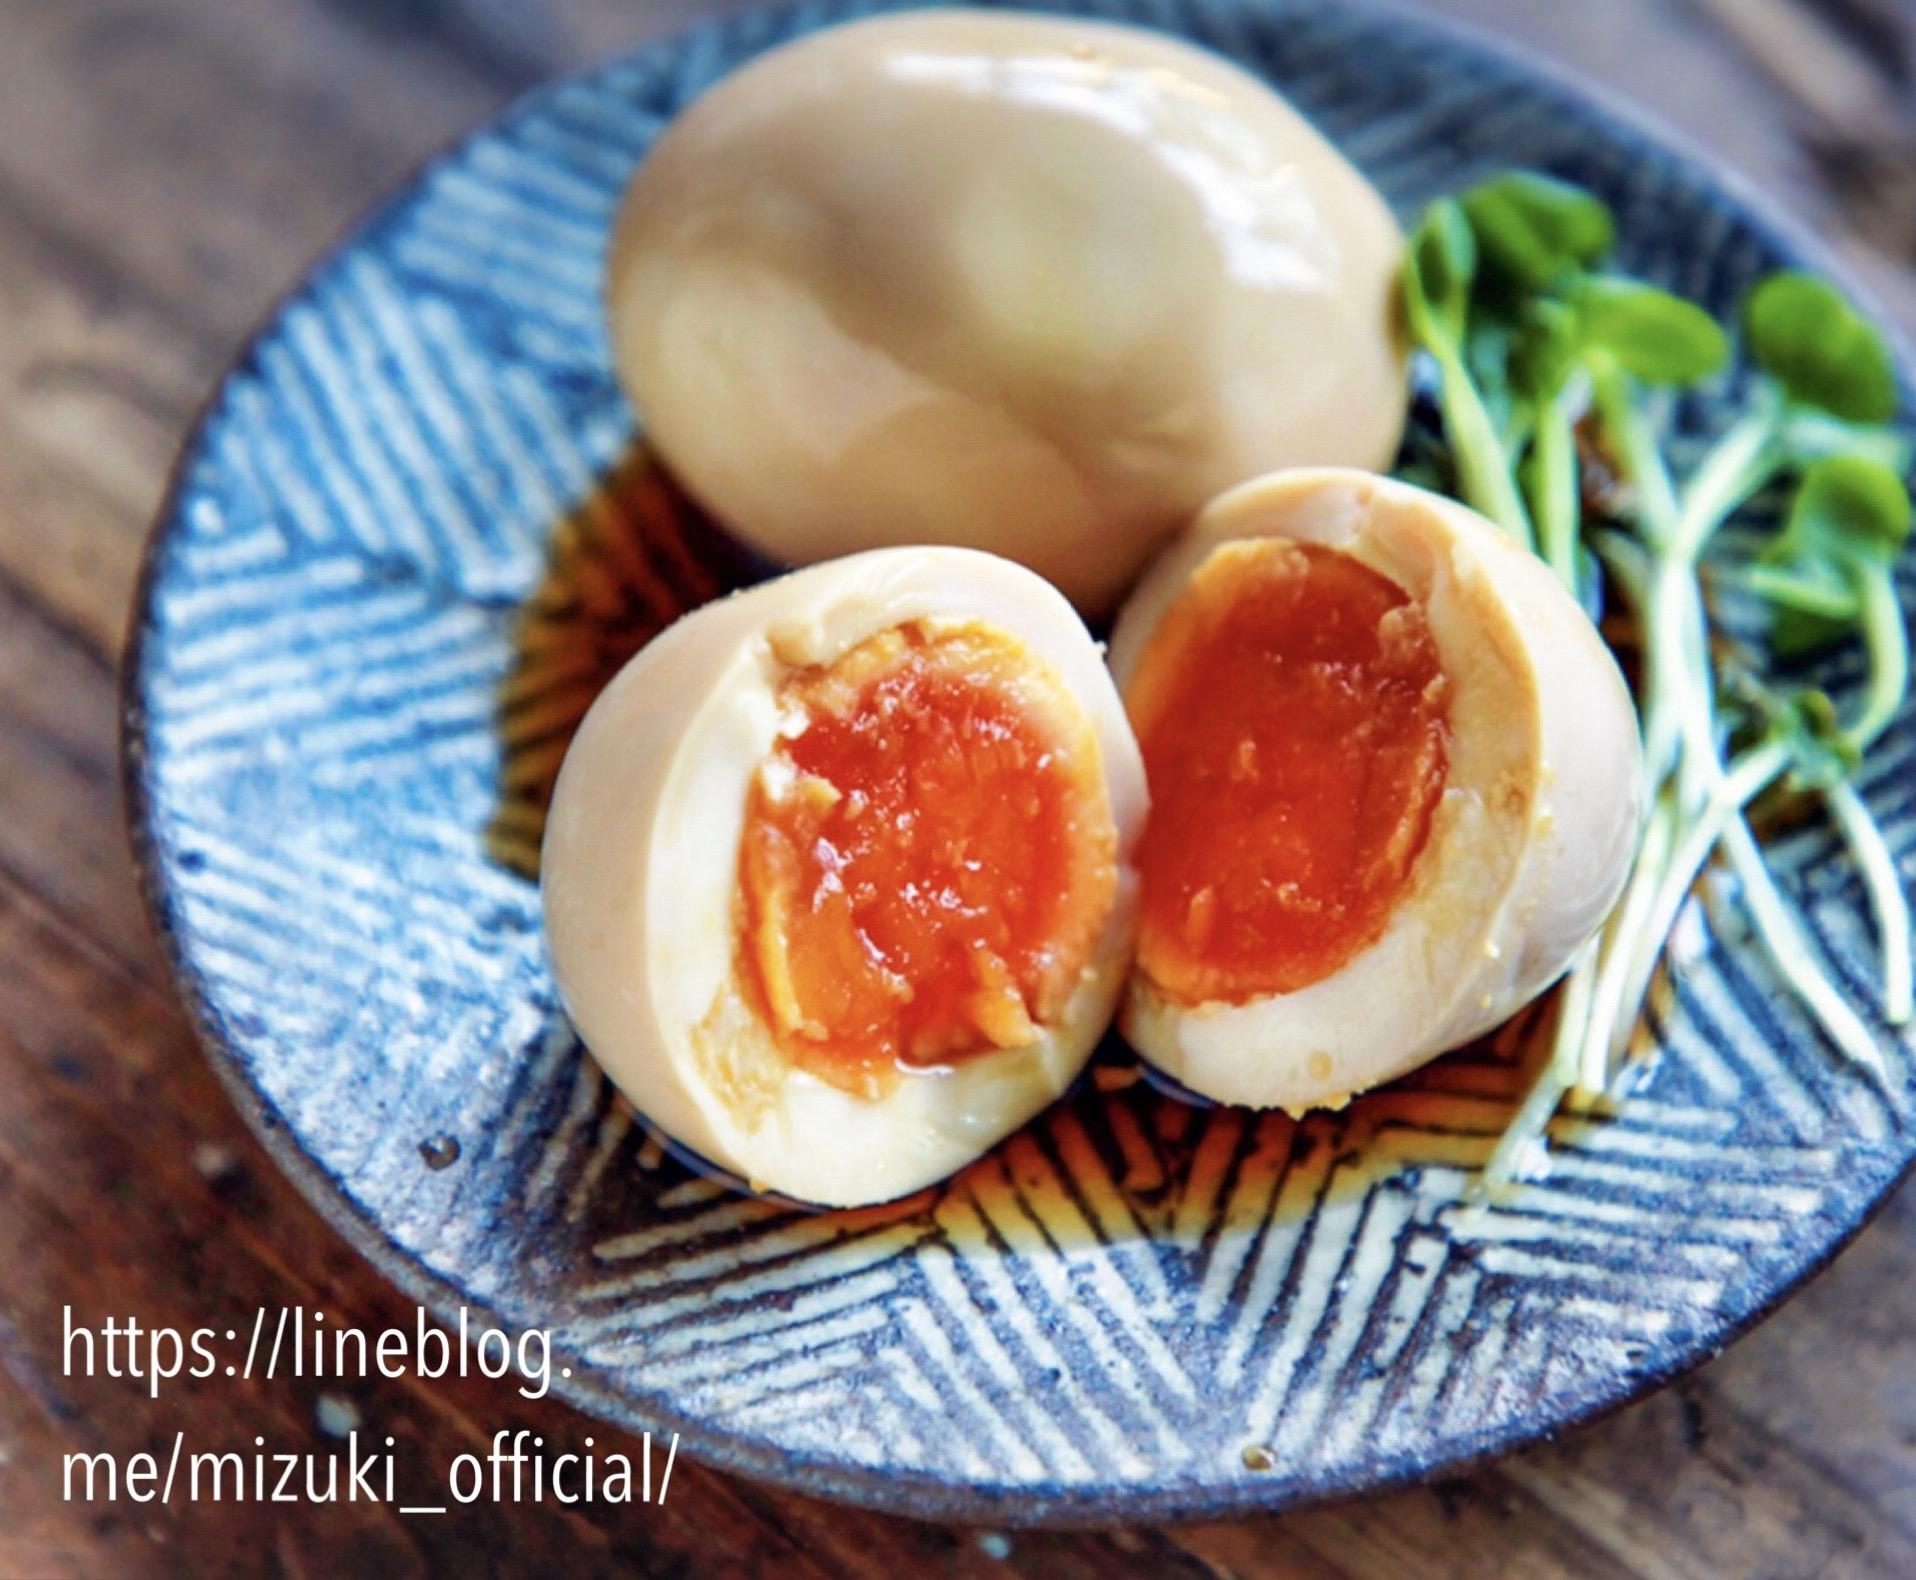 八方だしdeお手軽煮卵 味玉 簡単レシピ 作り置き ミツカン Mizukiの簡単レシピとキラキラテーブルスタイリング 公式連載 レシピブログ